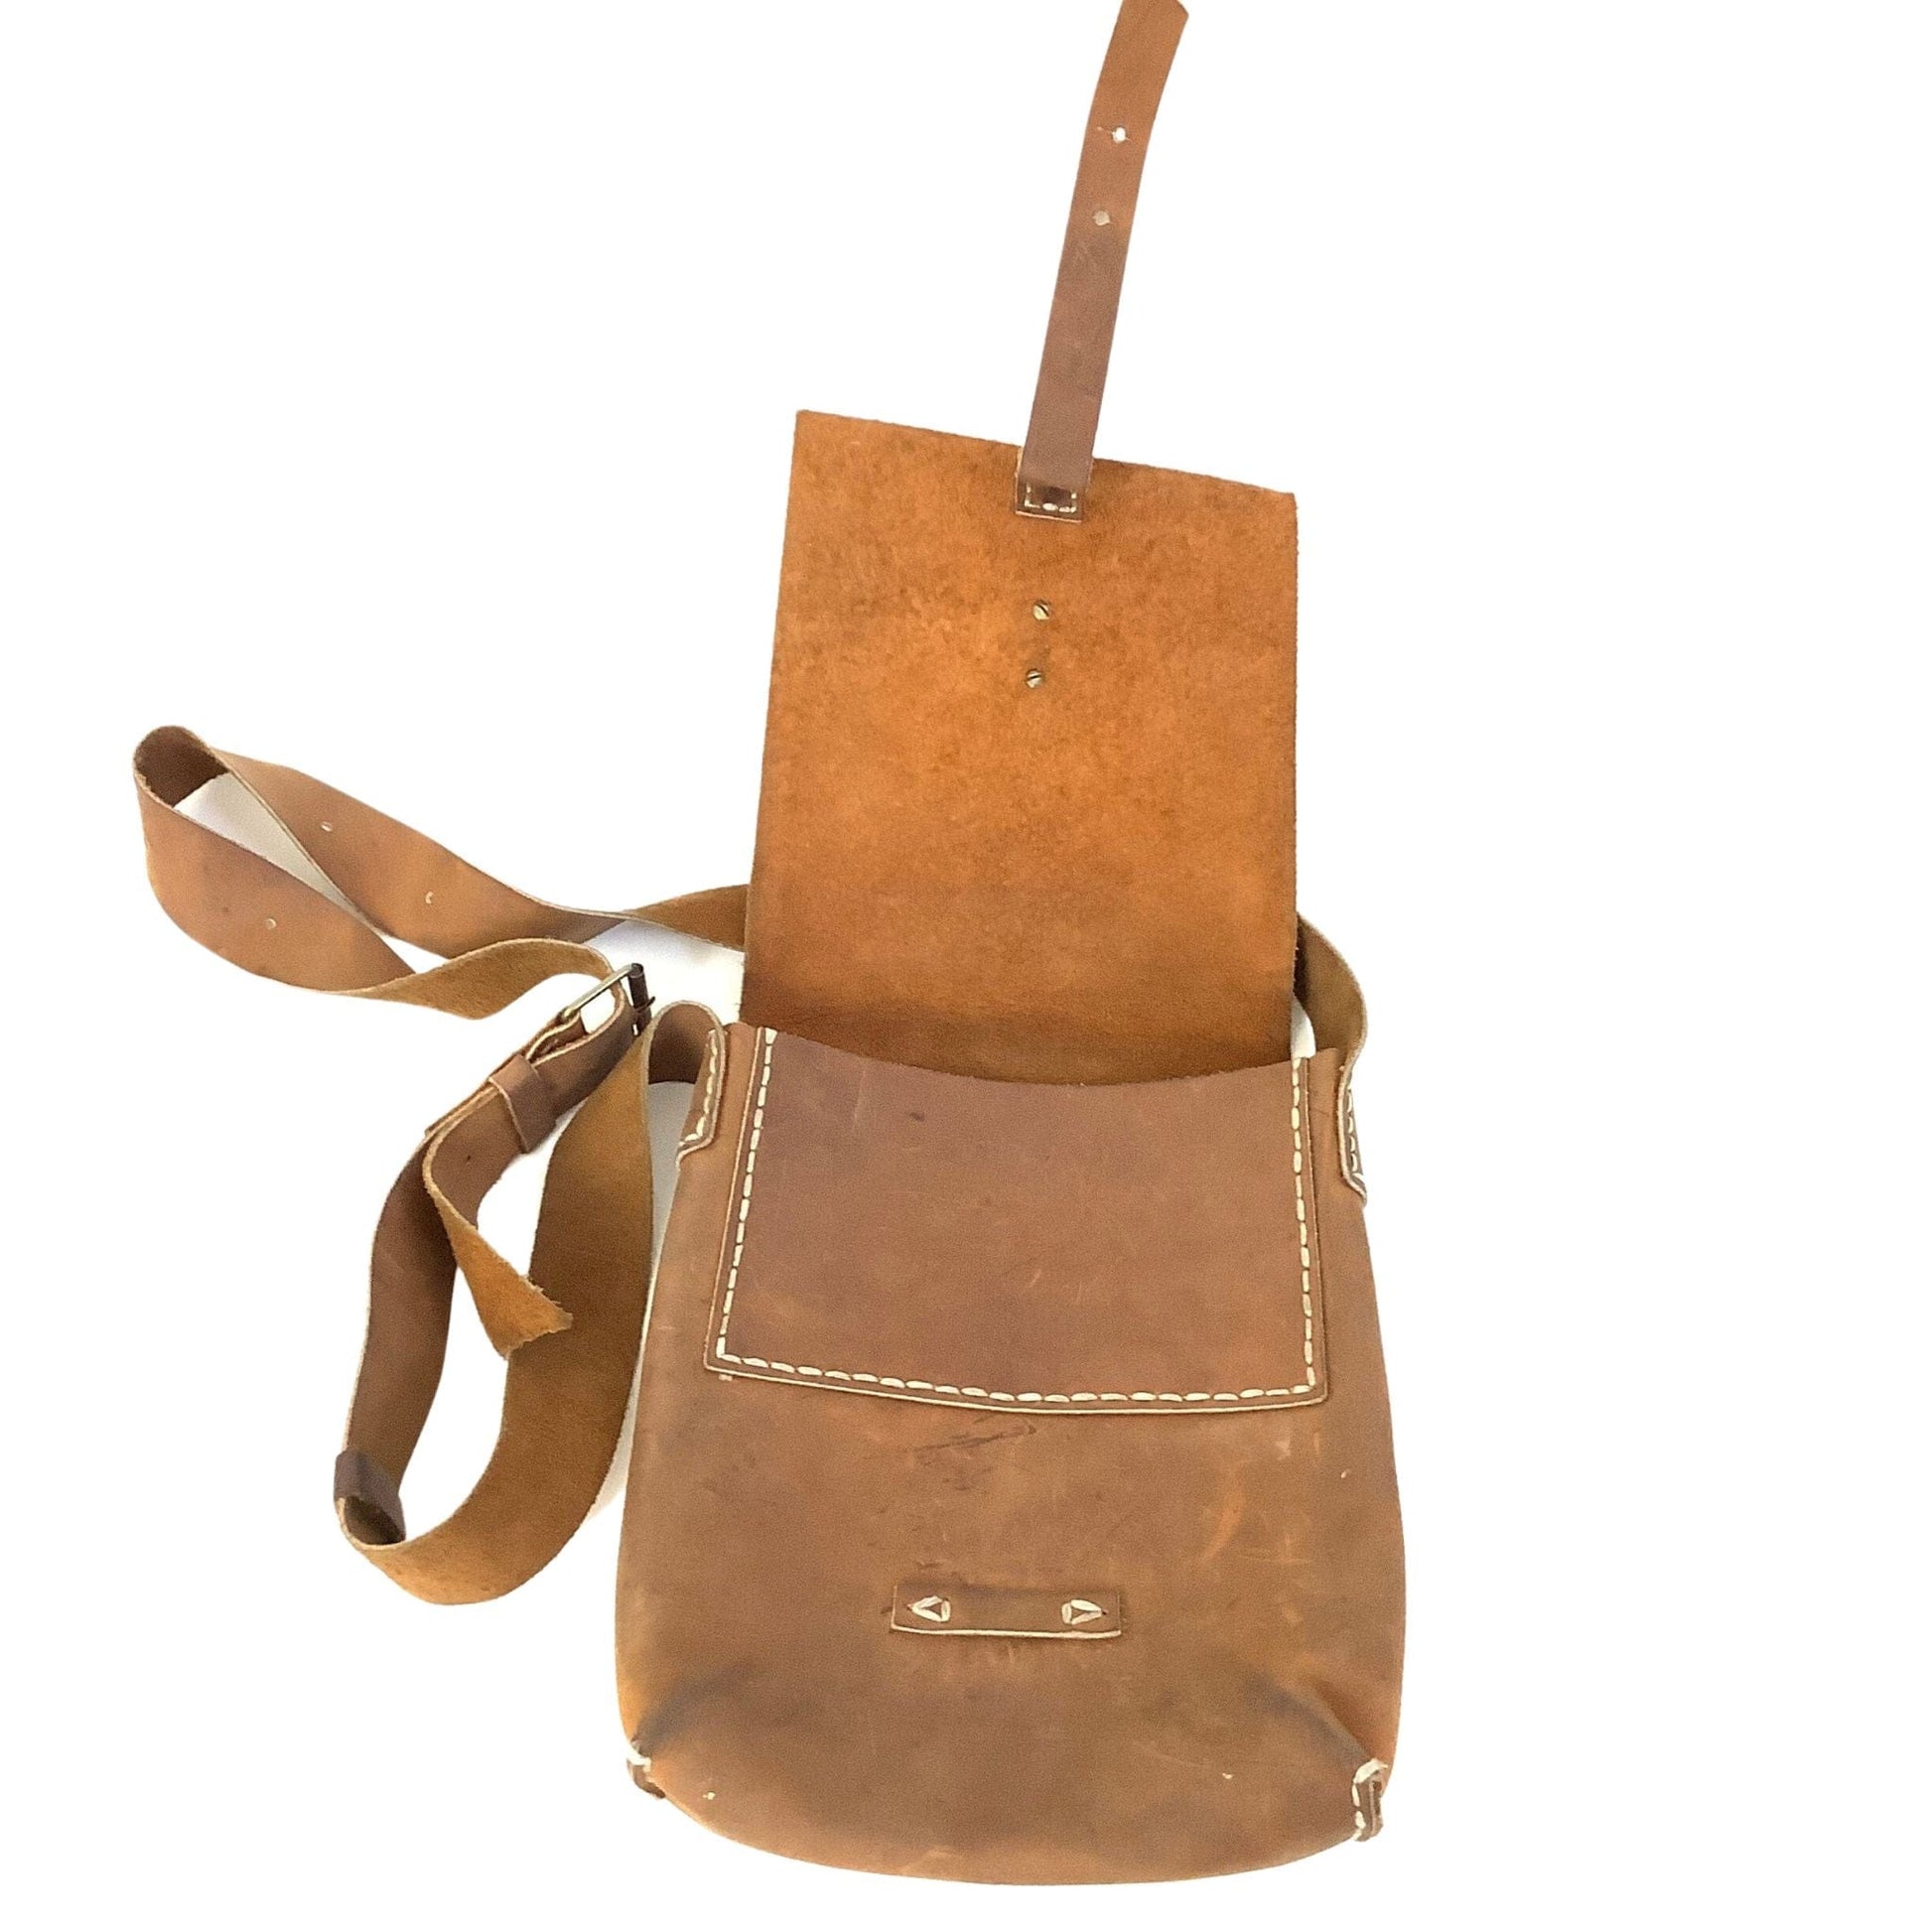 Rustic Messenger Bag Tan / Leather / Vintage 1970s